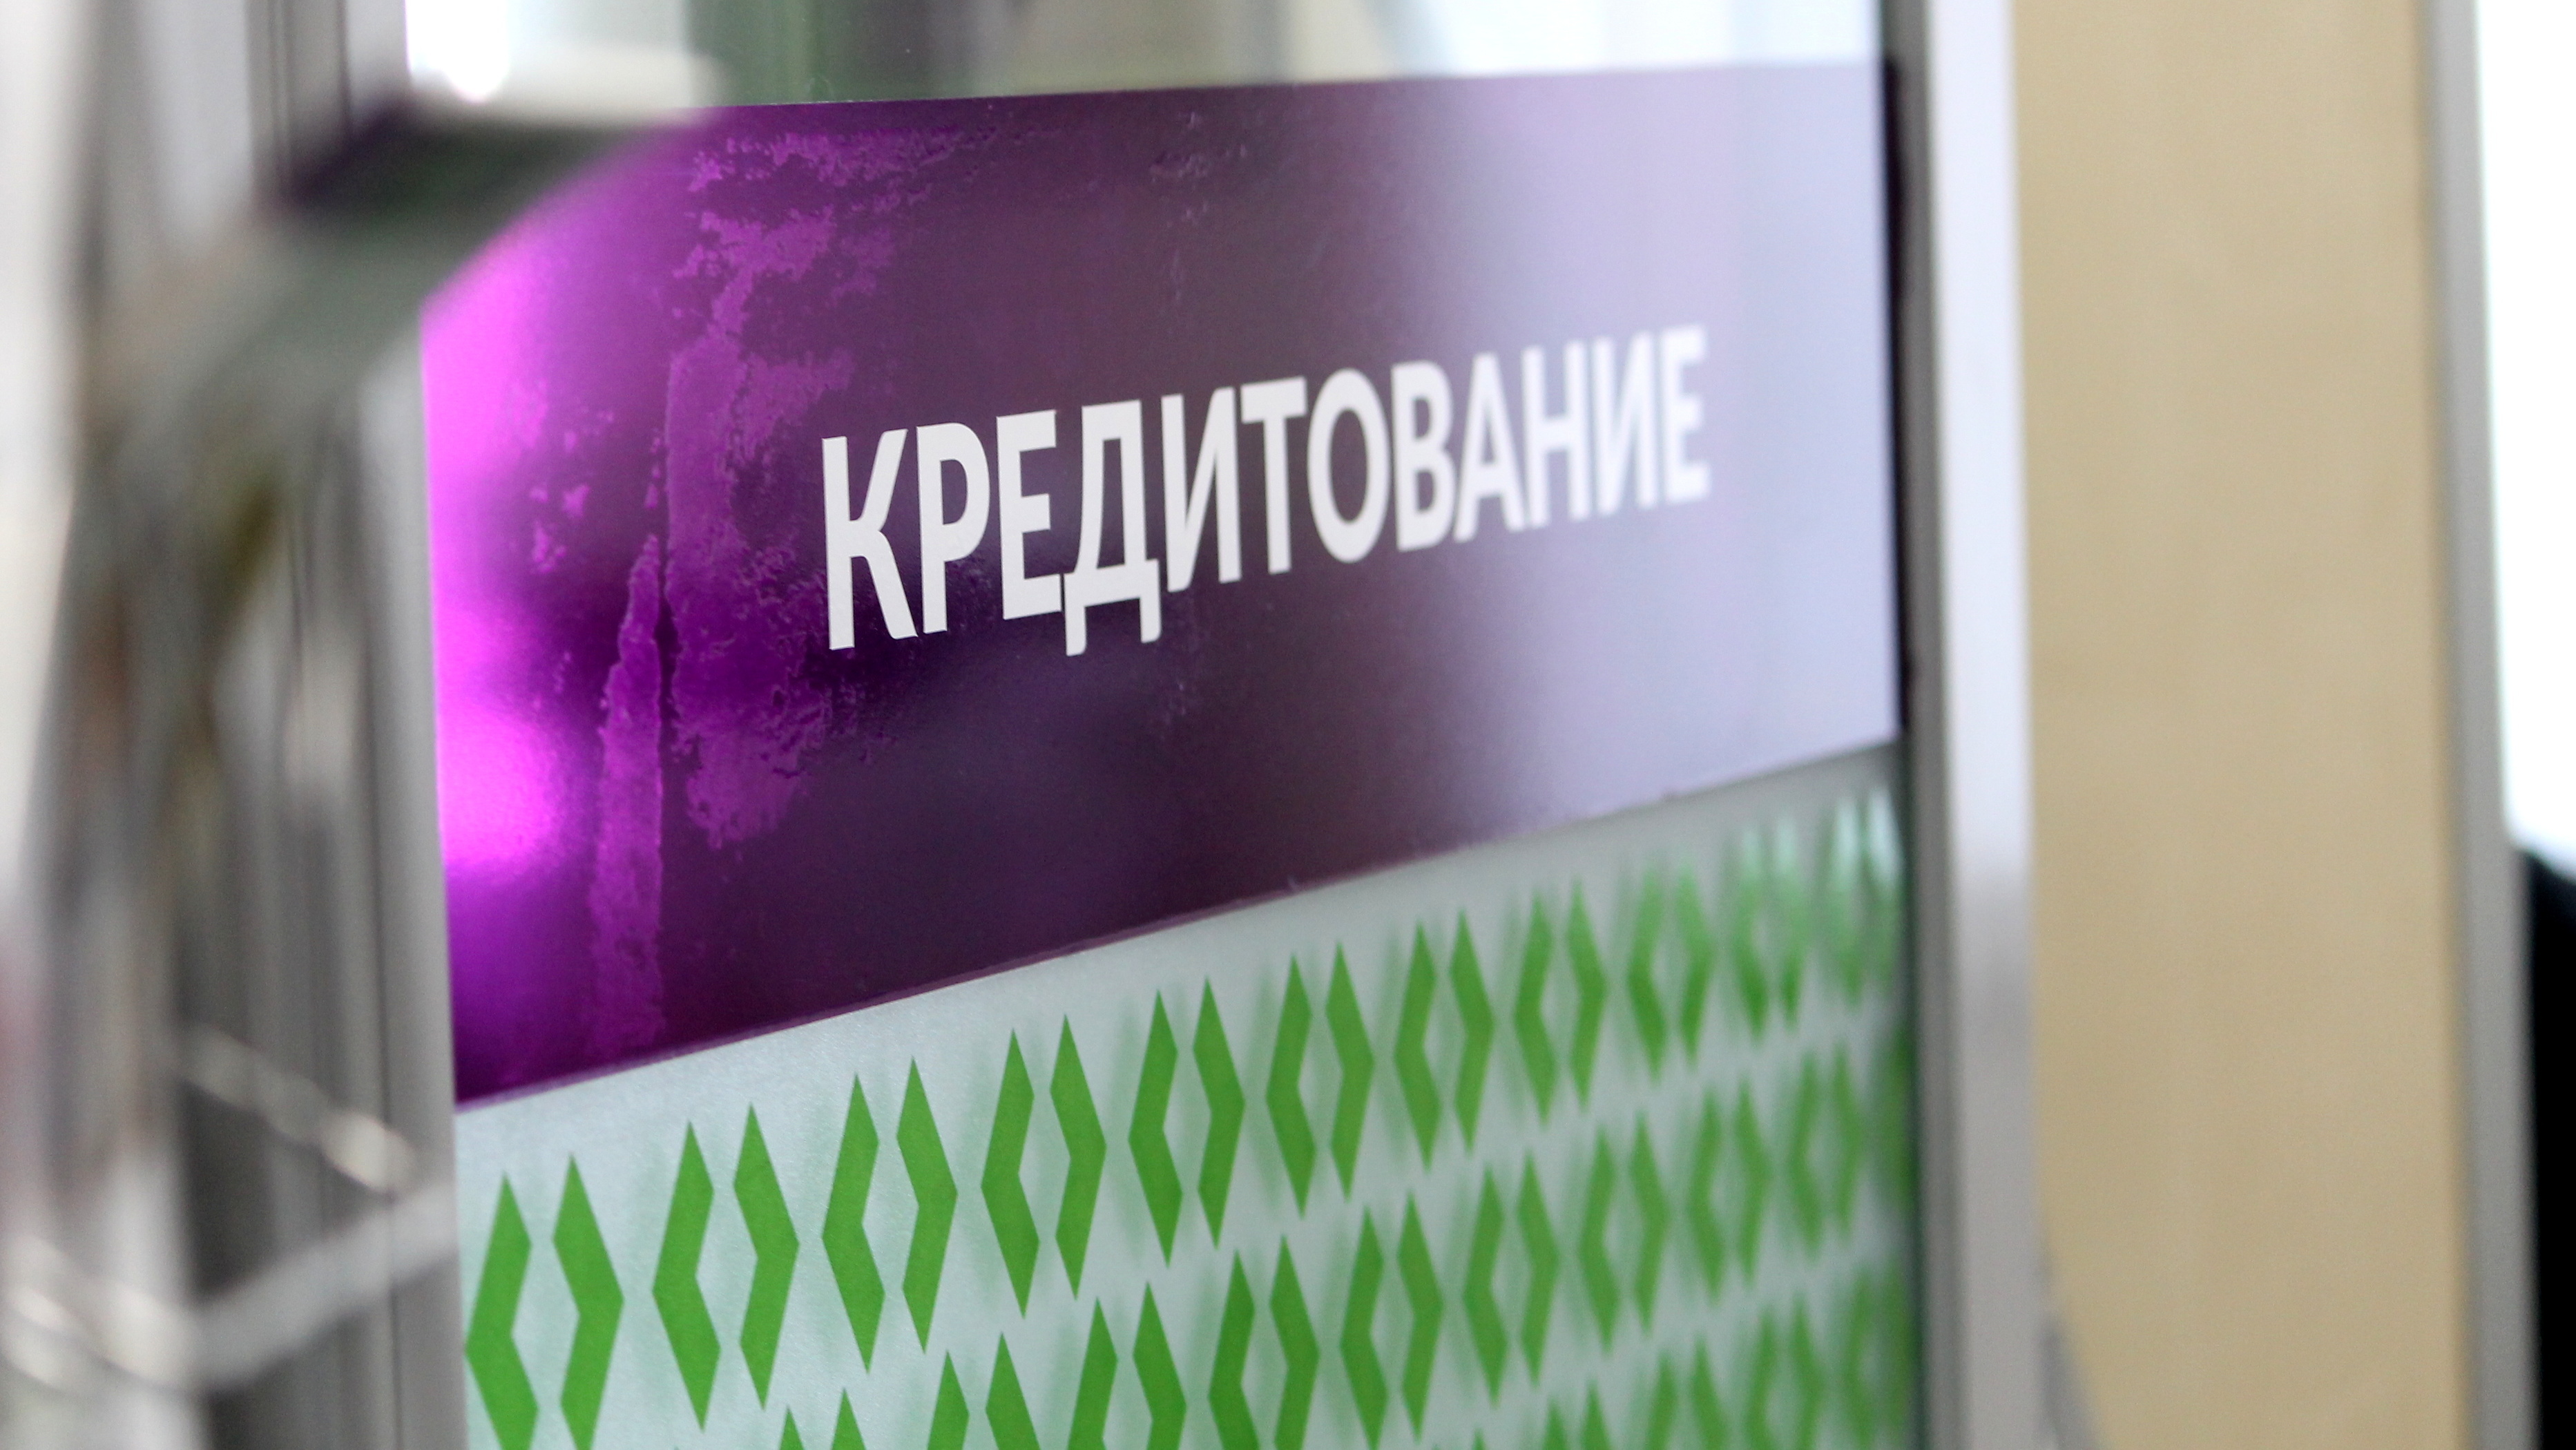 Упадут ставки по ипотеке и кредитам уже сейчас: экономист из Новосибирска о ставке ЦБ